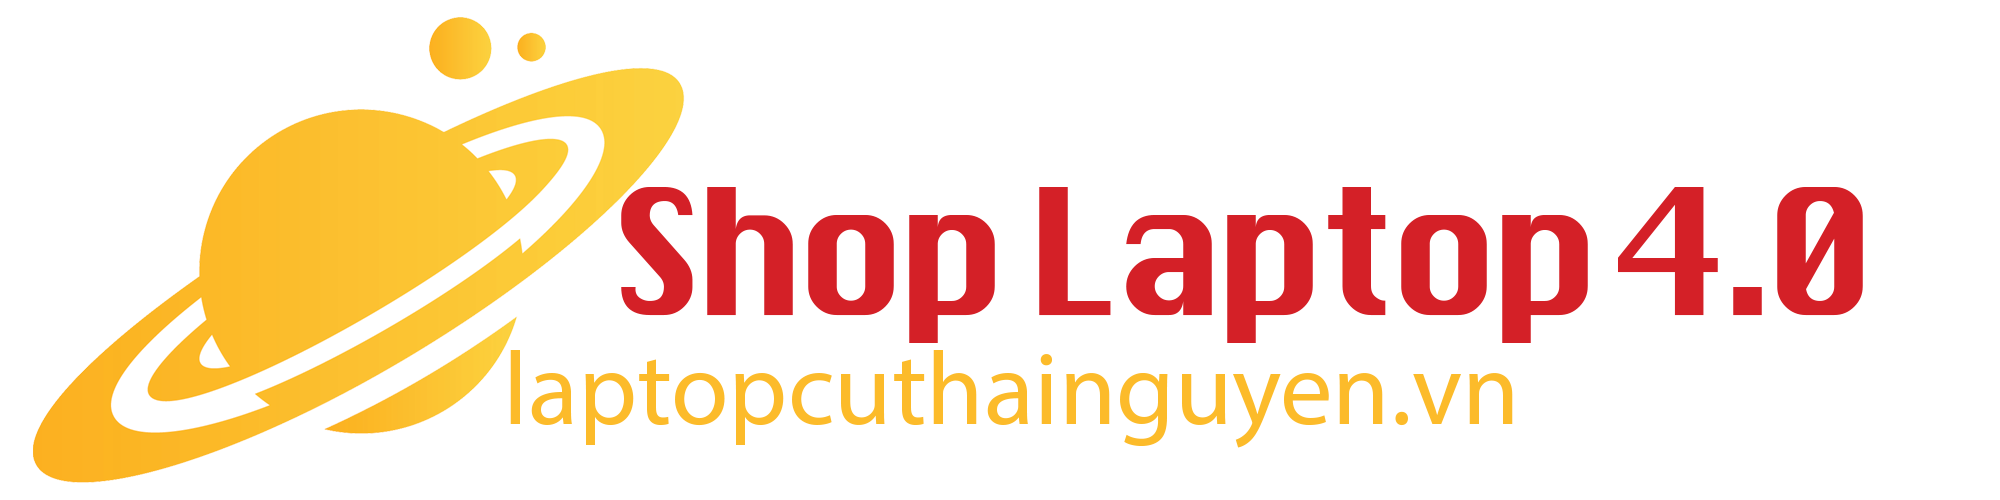 Laptop Cũ Thái Nguyên - Shop Công nghệ 4.0